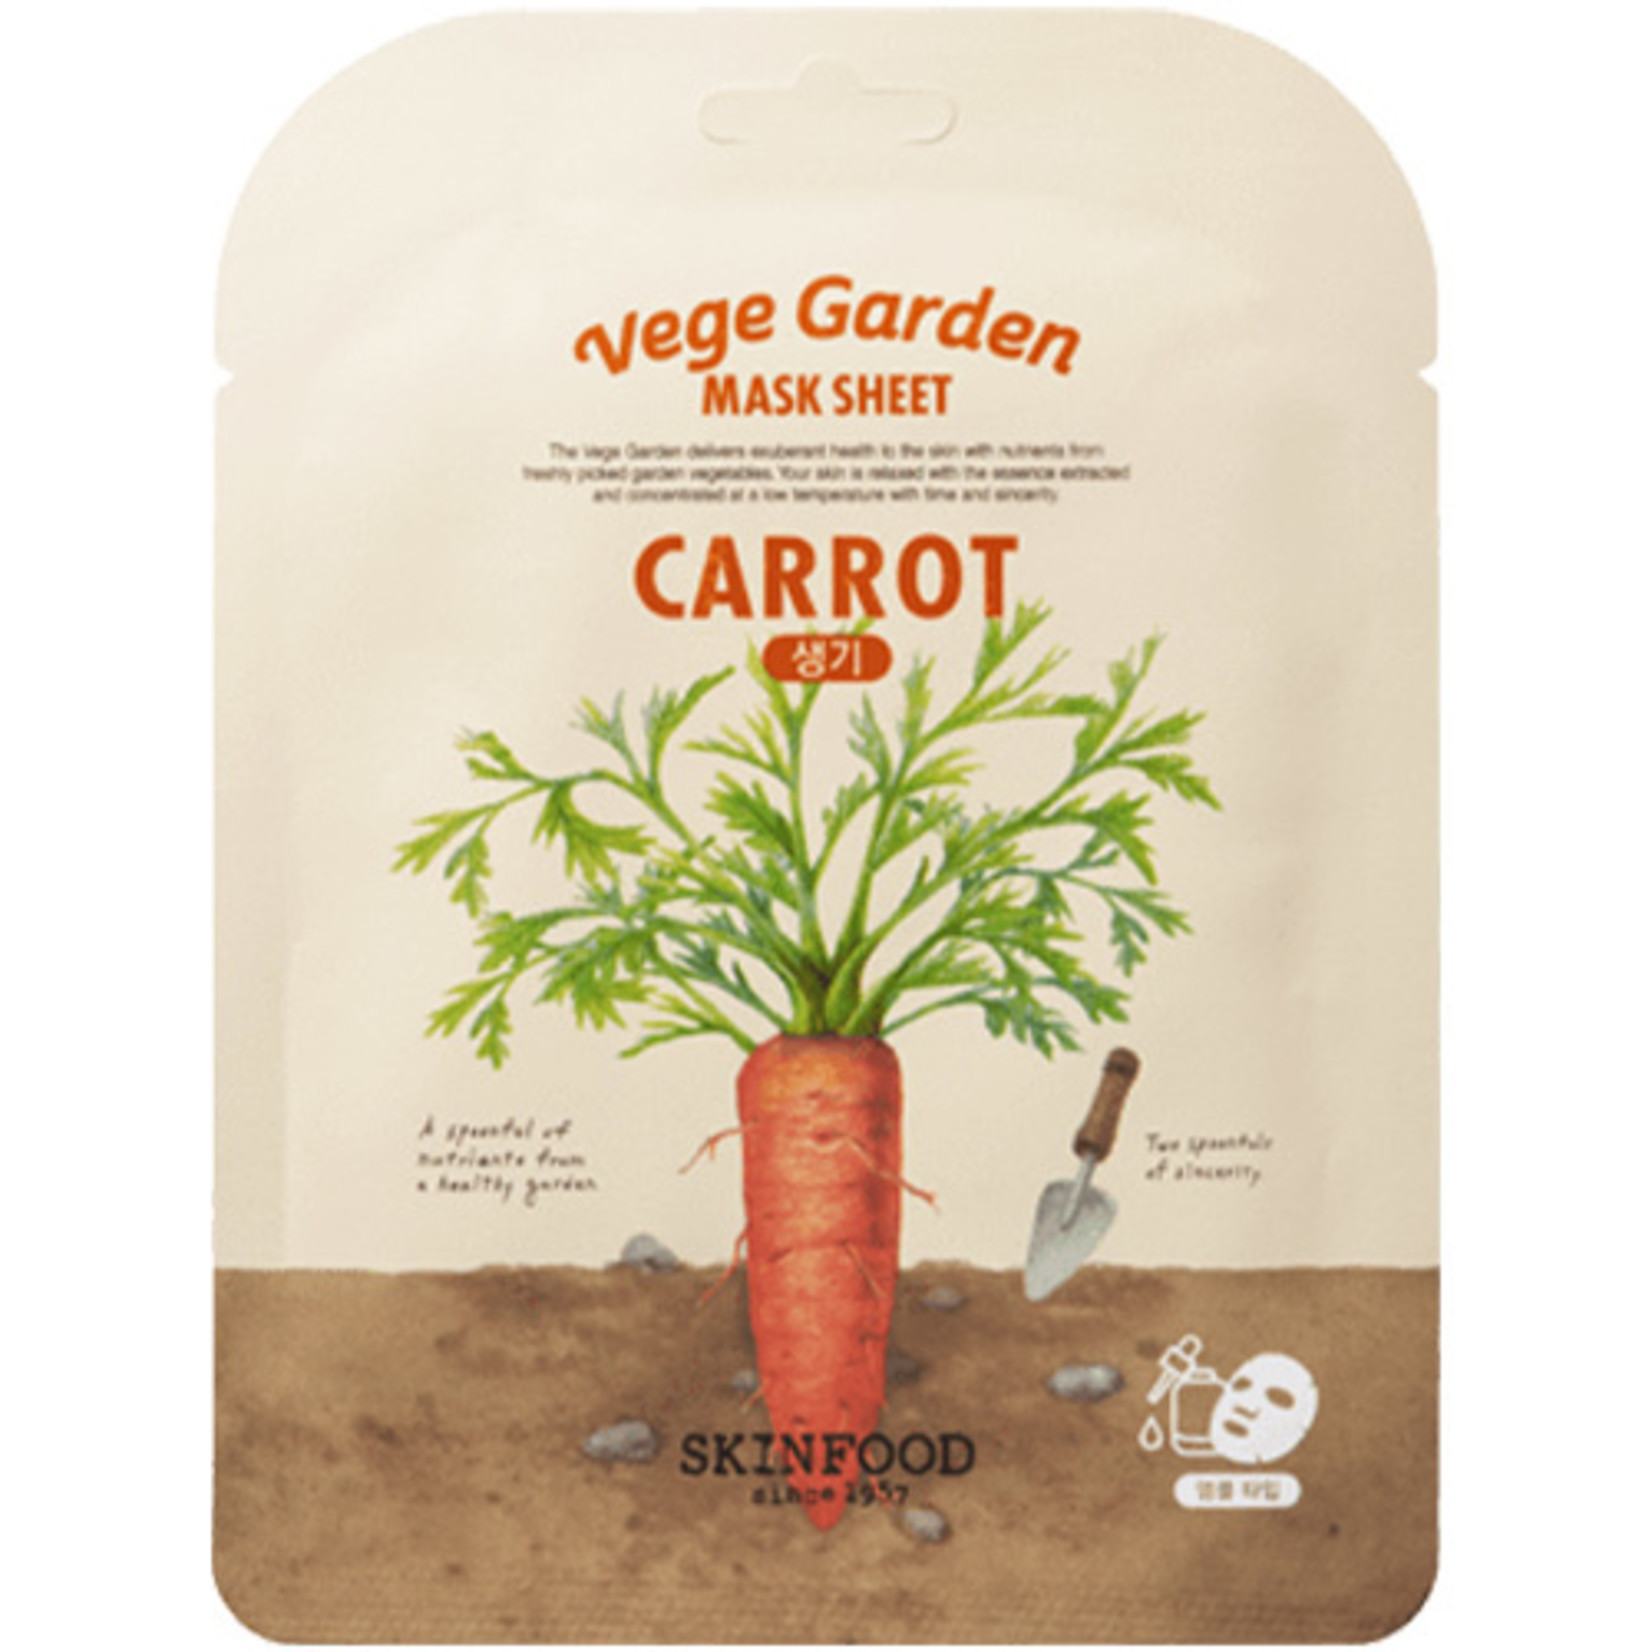 SKINFOOD Vege Garden Carrot Mask Sheet